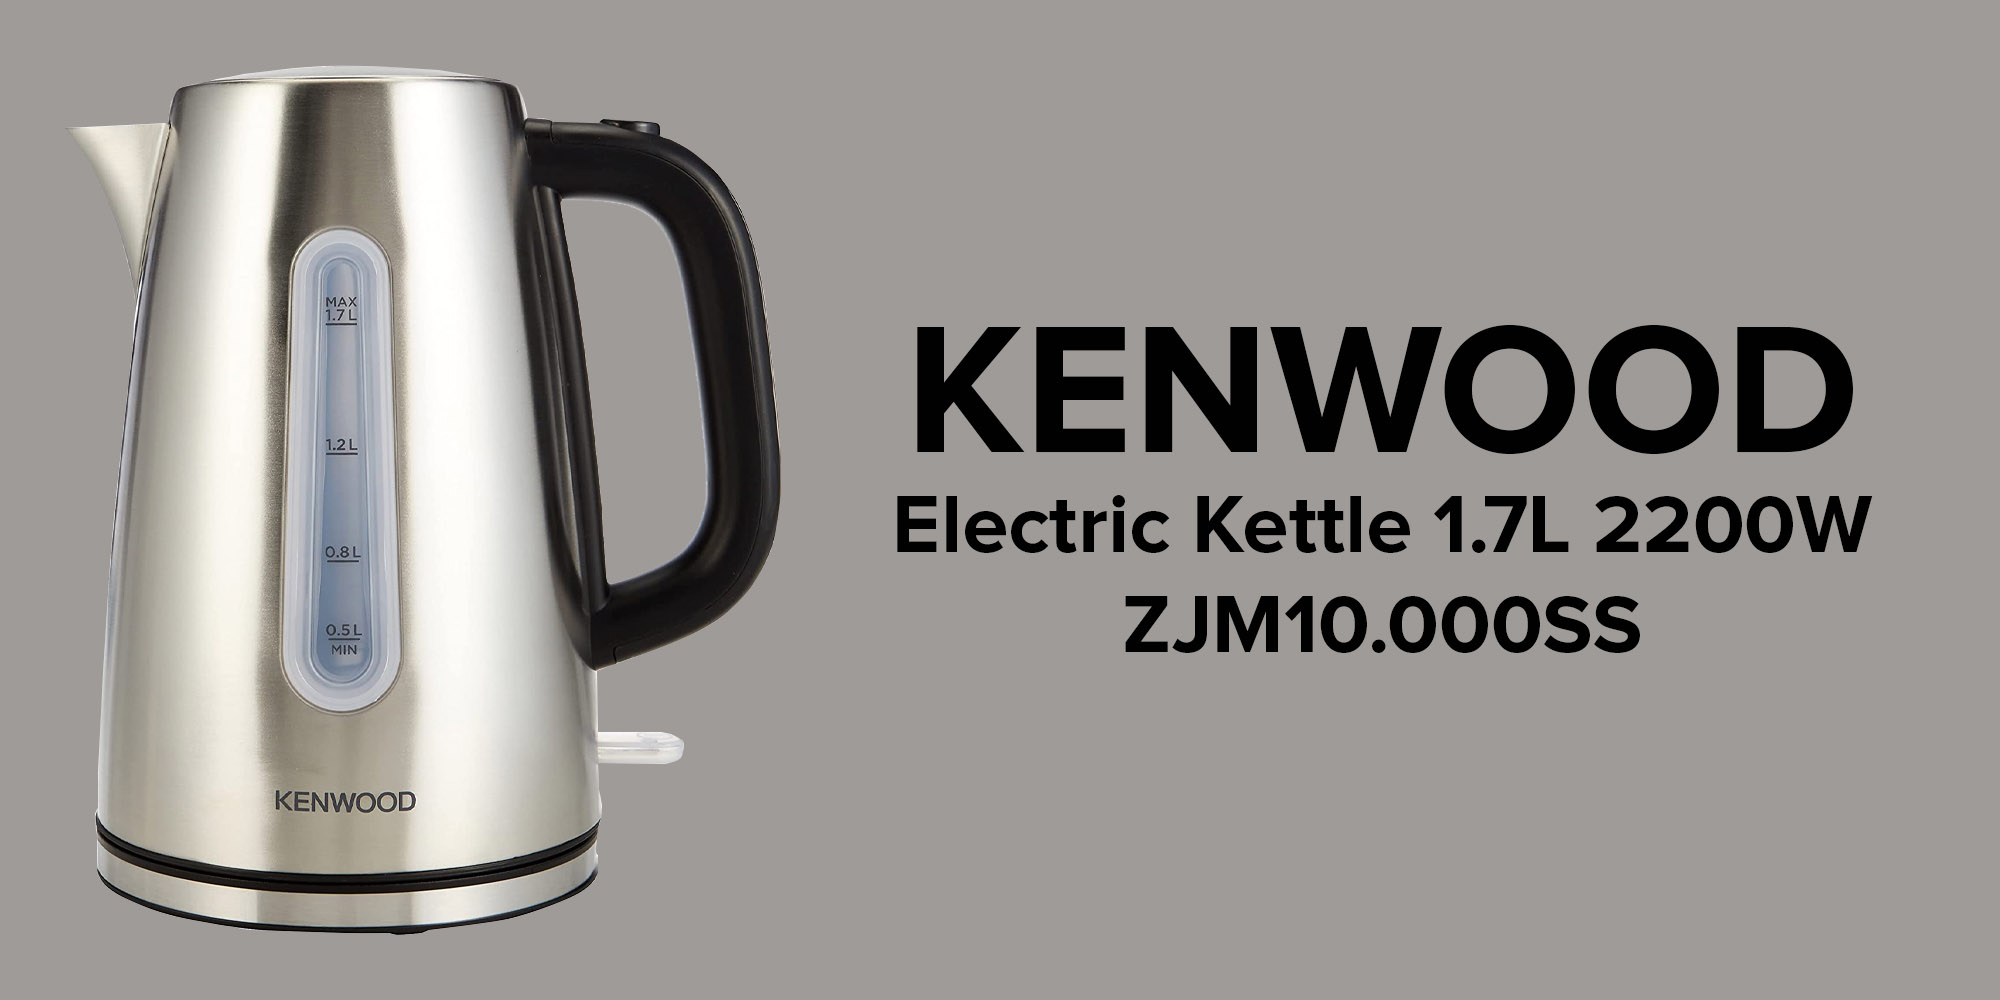 Kenwood Electric Kettle - ZJM10.000SS